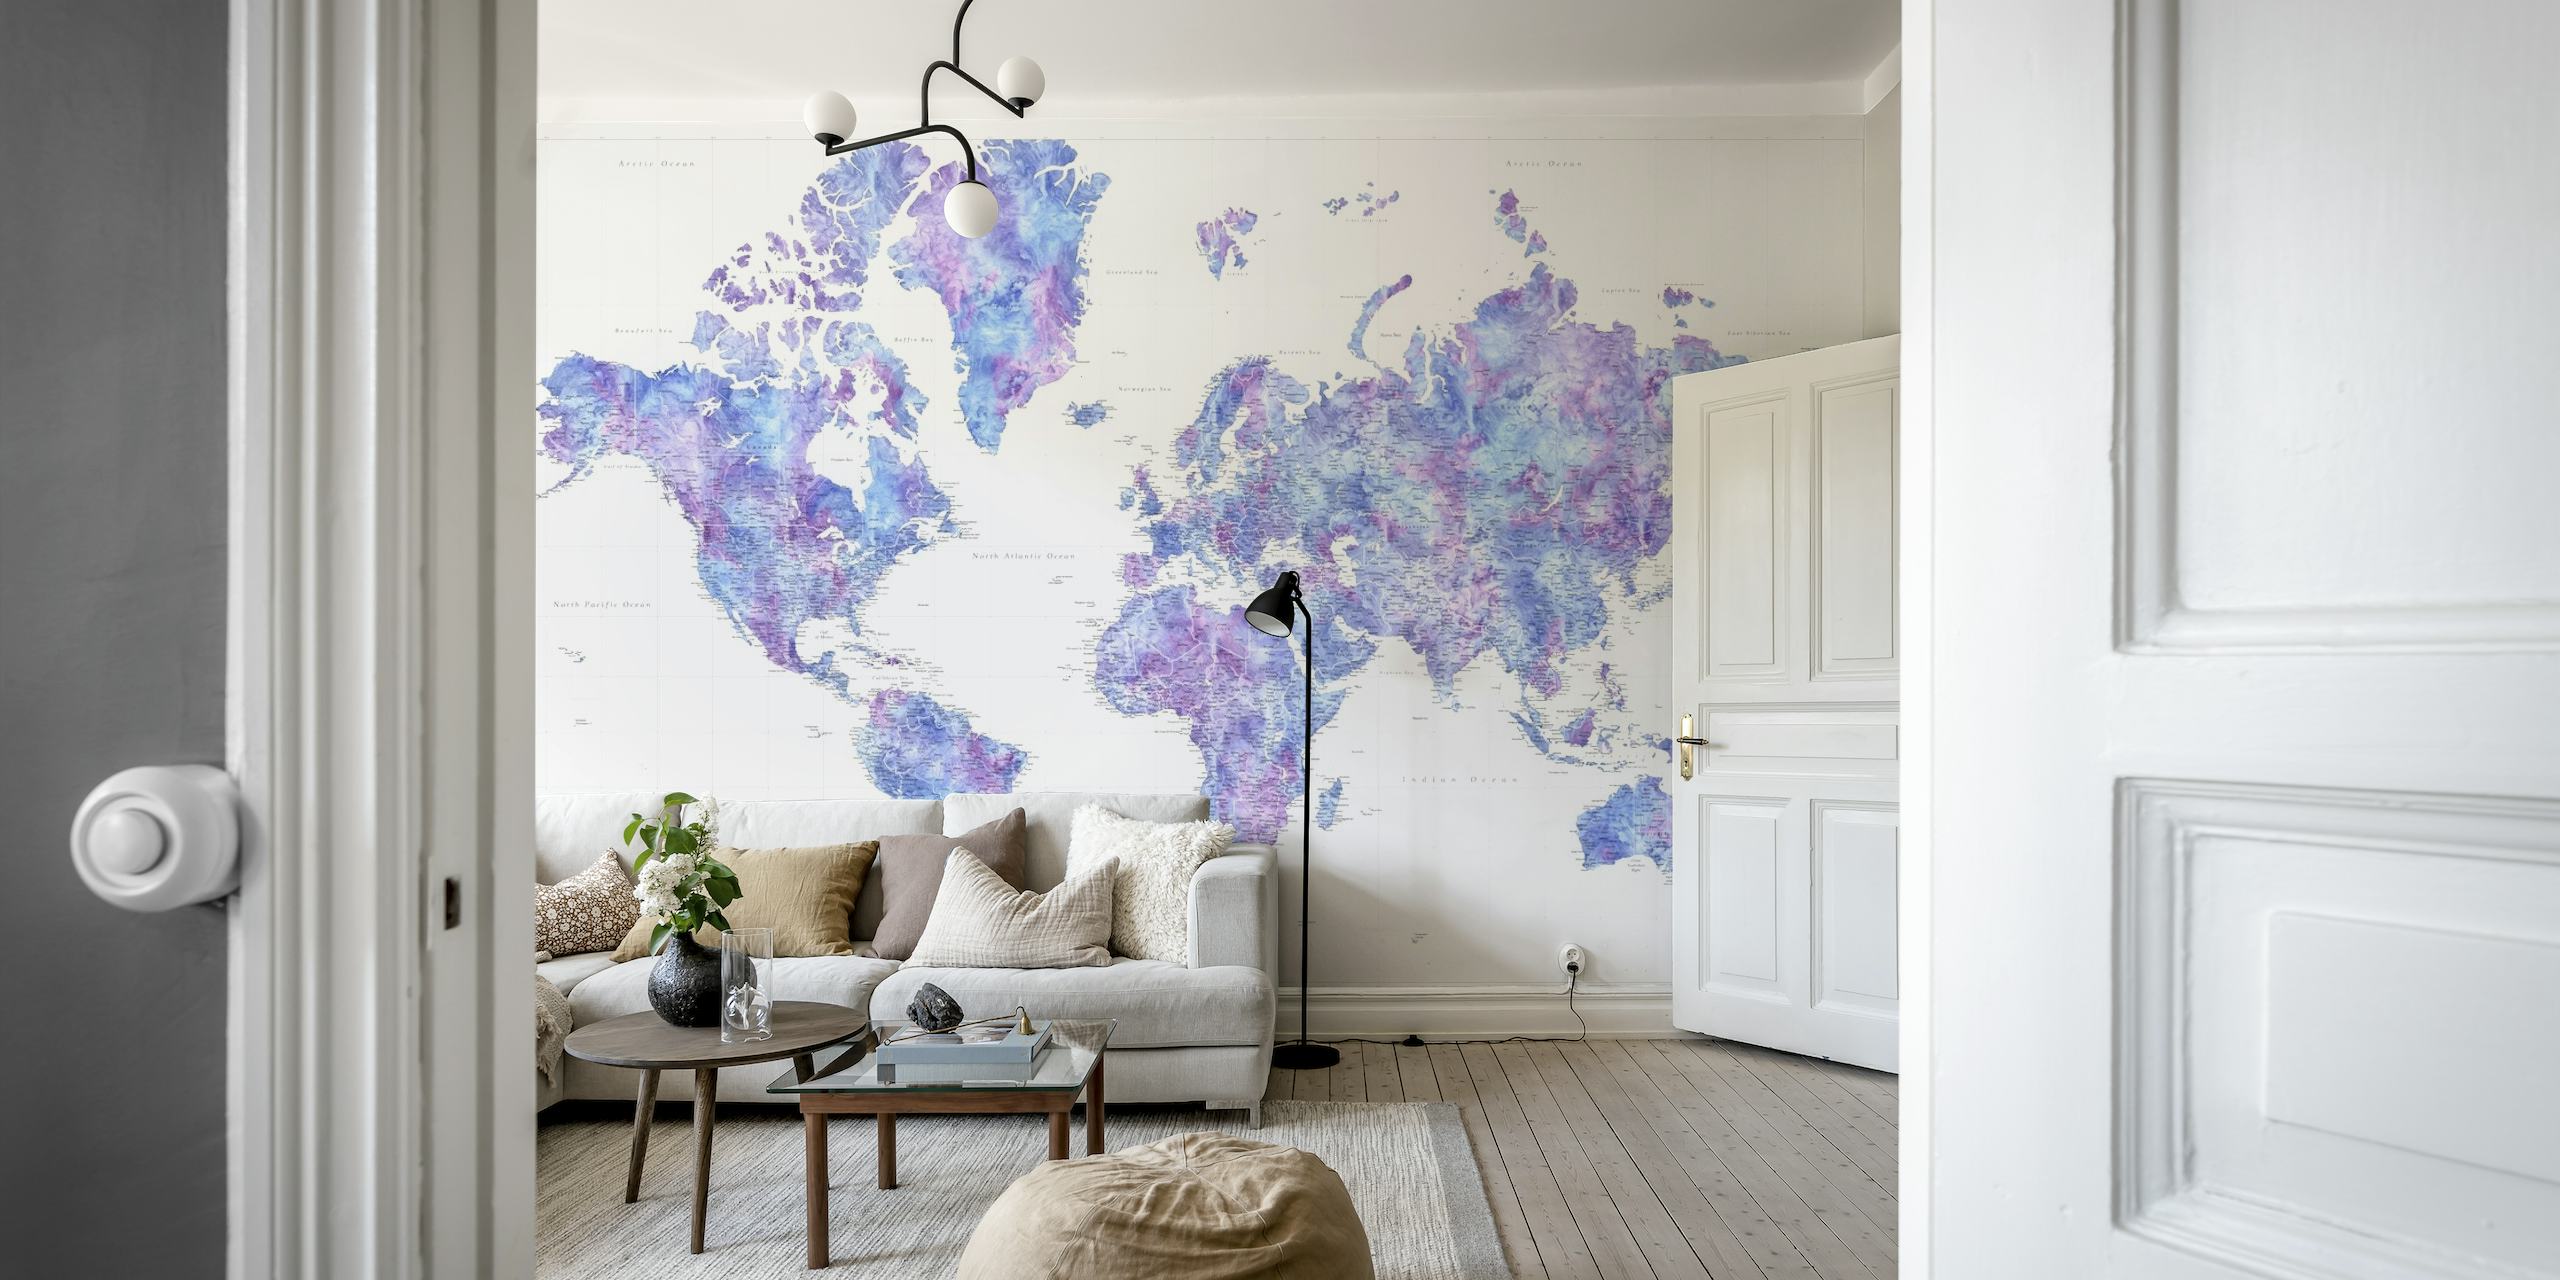 Wandbild mit farbenfroher Weltkarte und vielen Details